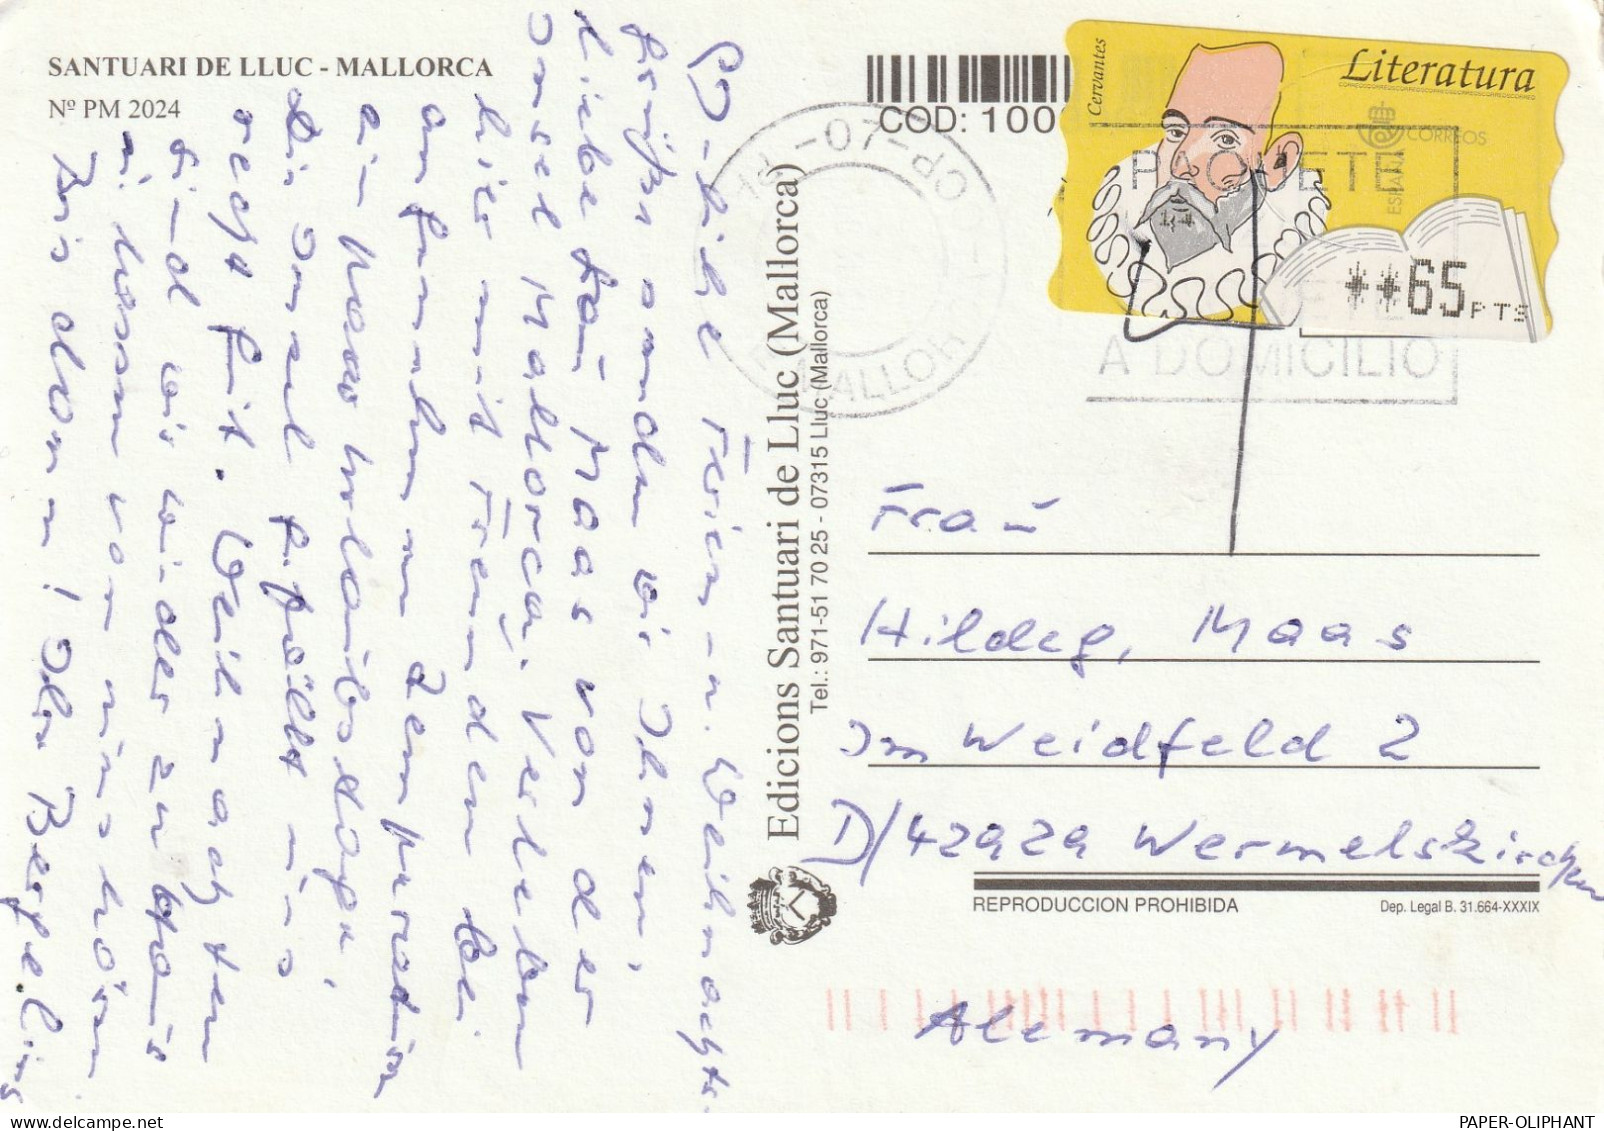 ESPANA - 1996, Automatenmarke ATM Michel 15, Literatura - Vignette [ATM]